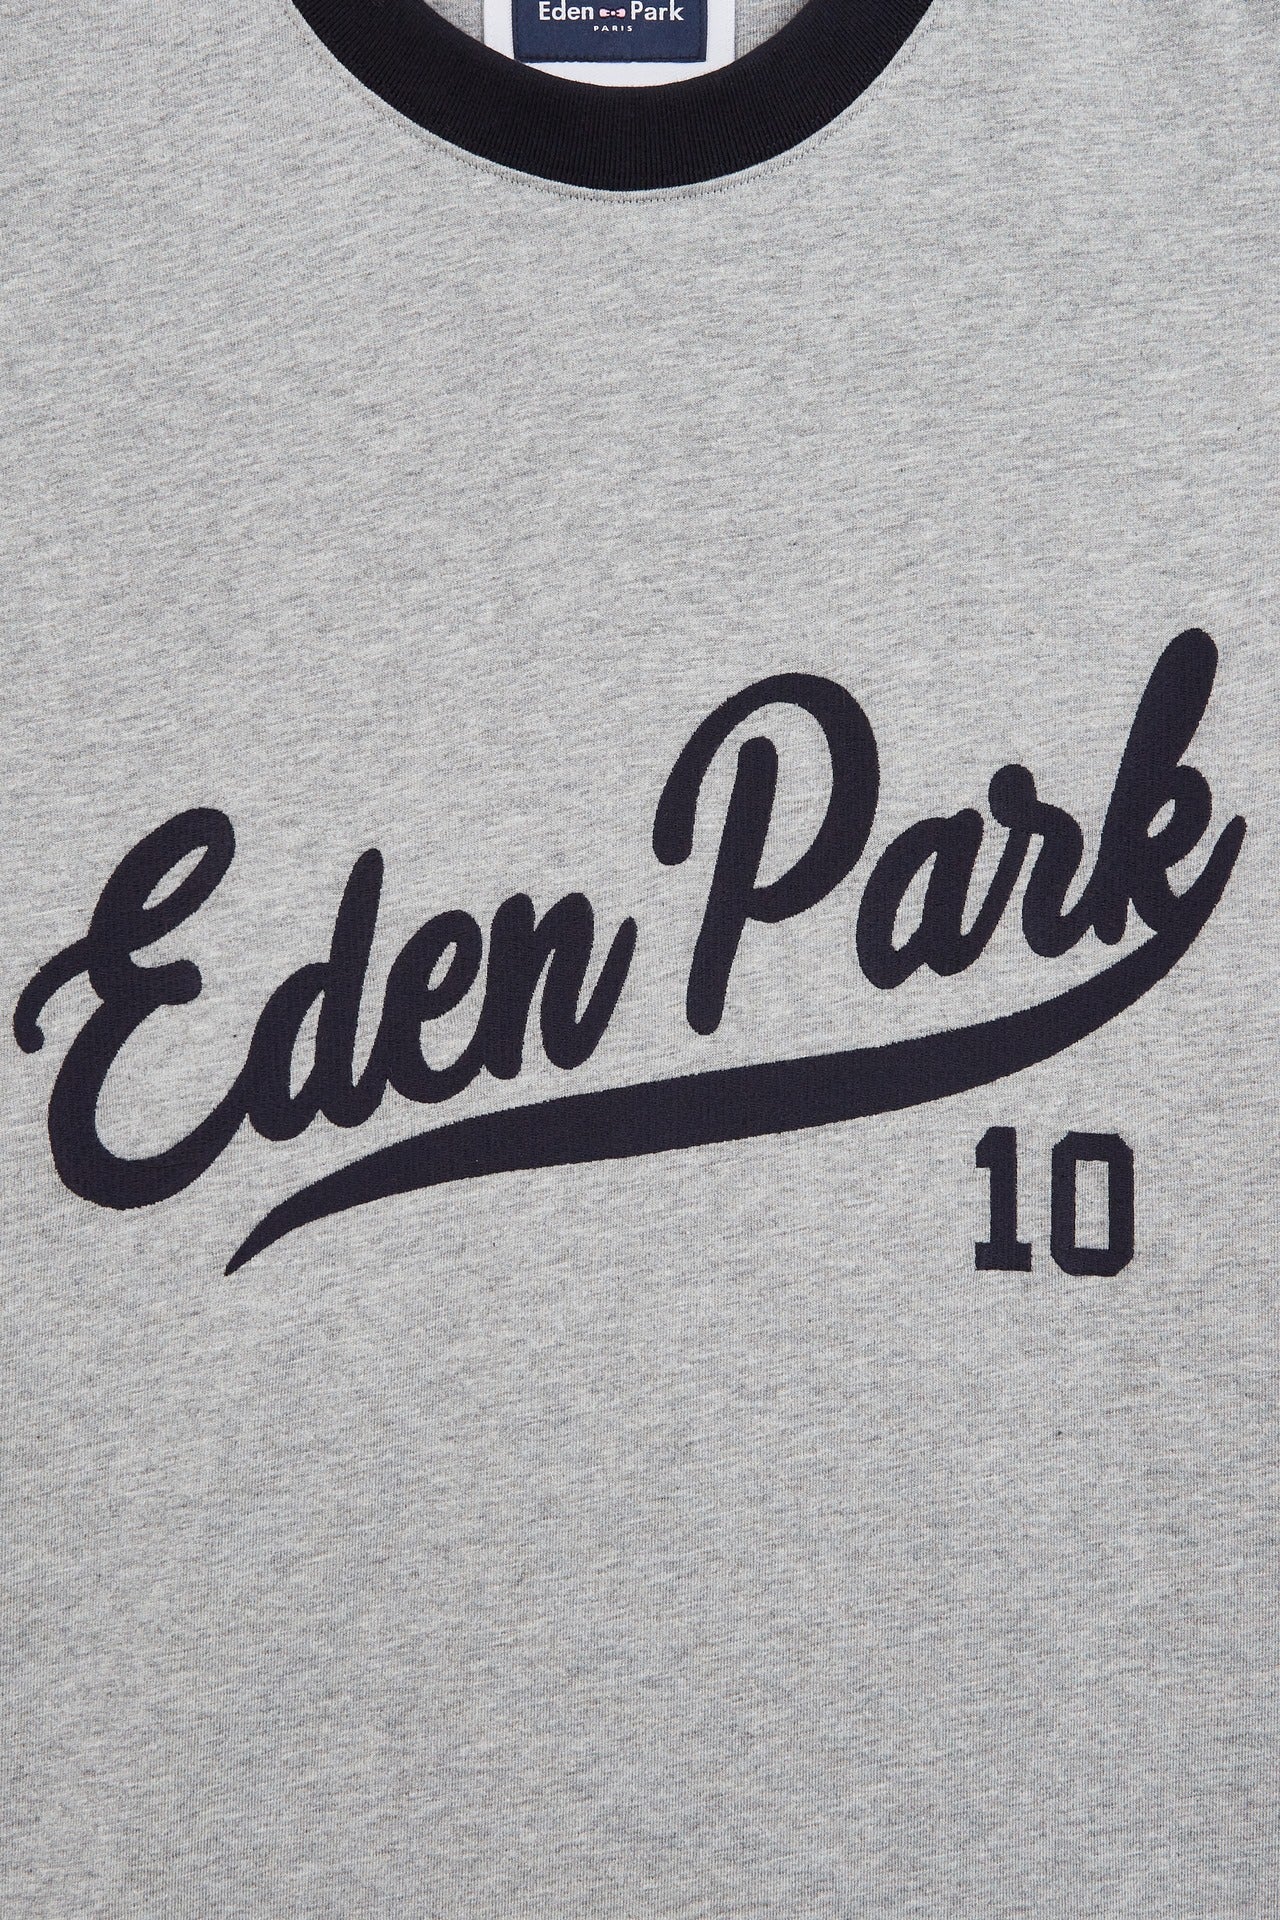 T-shirt gris clair colorblock inscription Eden Park